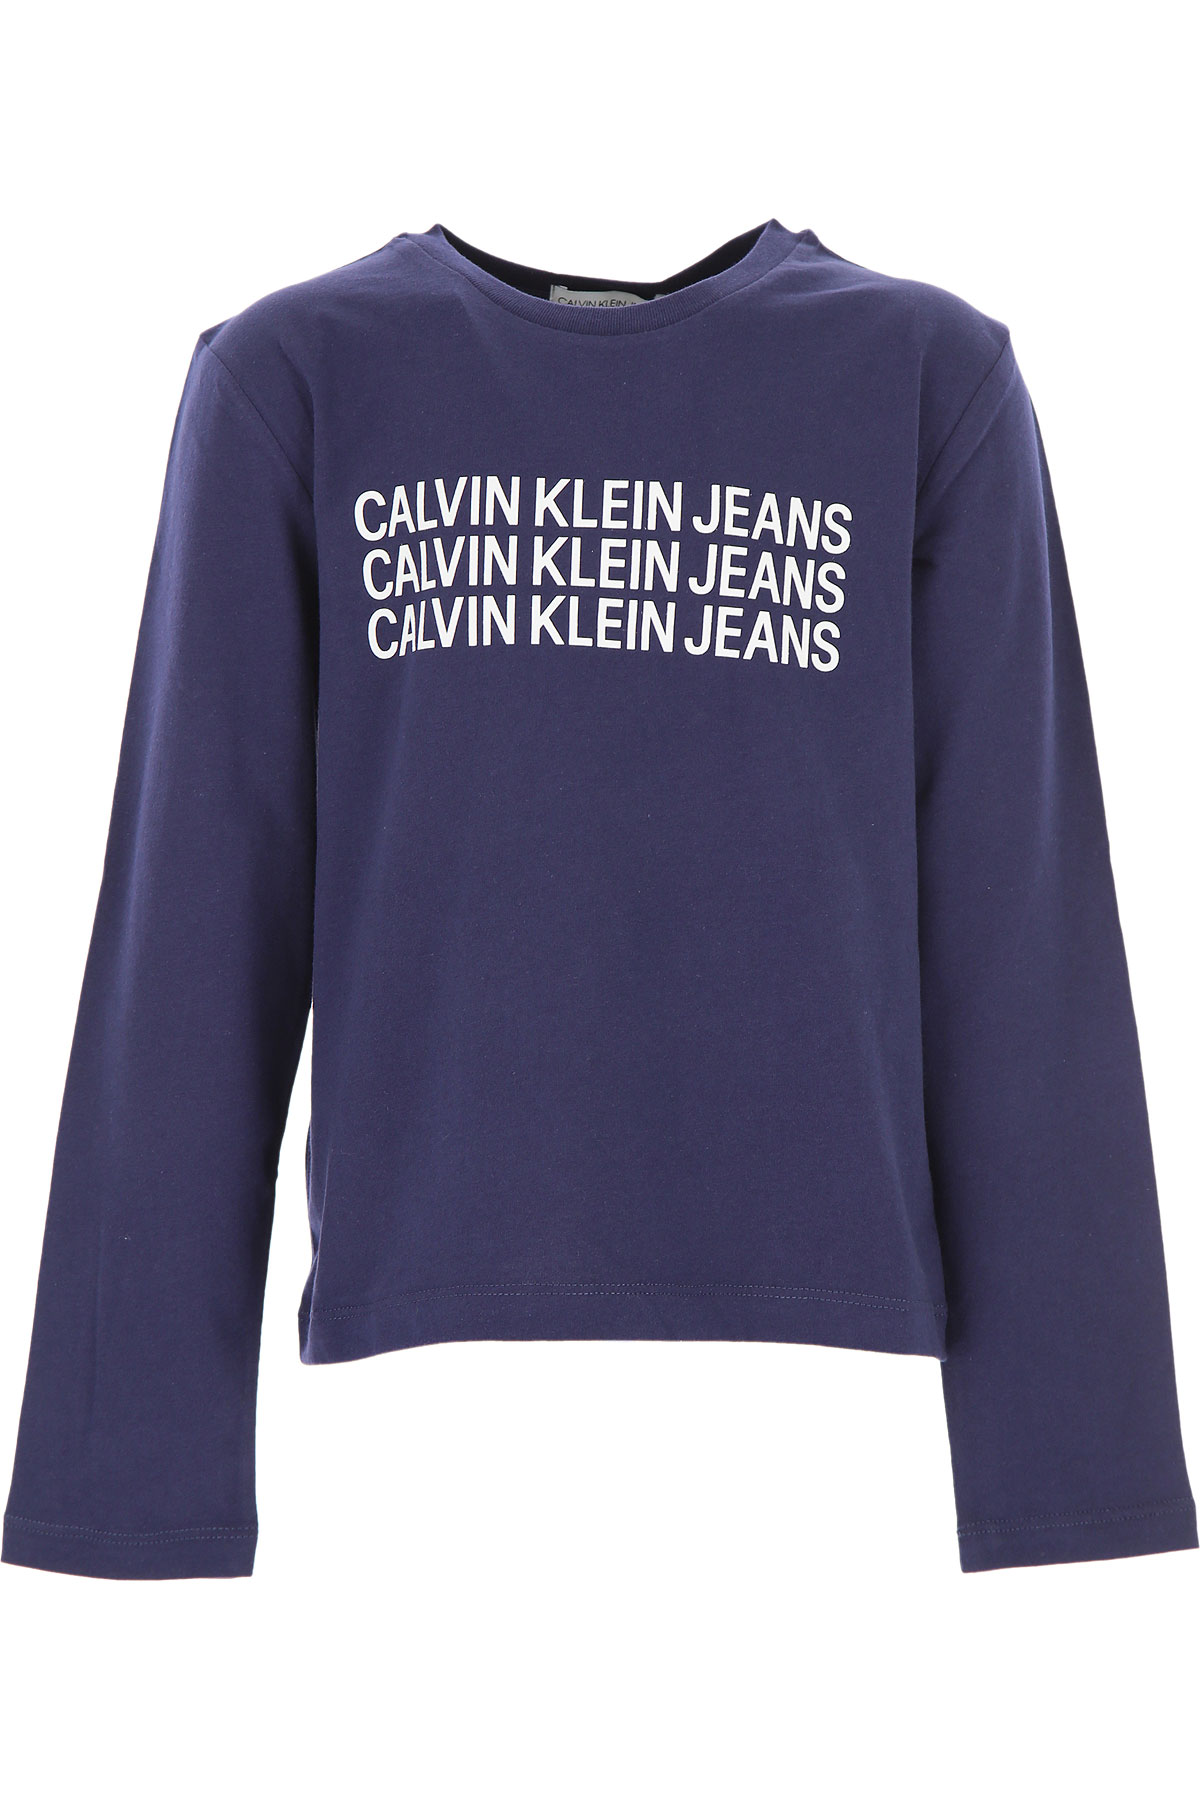 Calvin Klein Kinder T-Shirt für Jungen Günstig im Sale, Marine blau, Baumwolle, 2017, 10Y 12Y 14Y 8Y